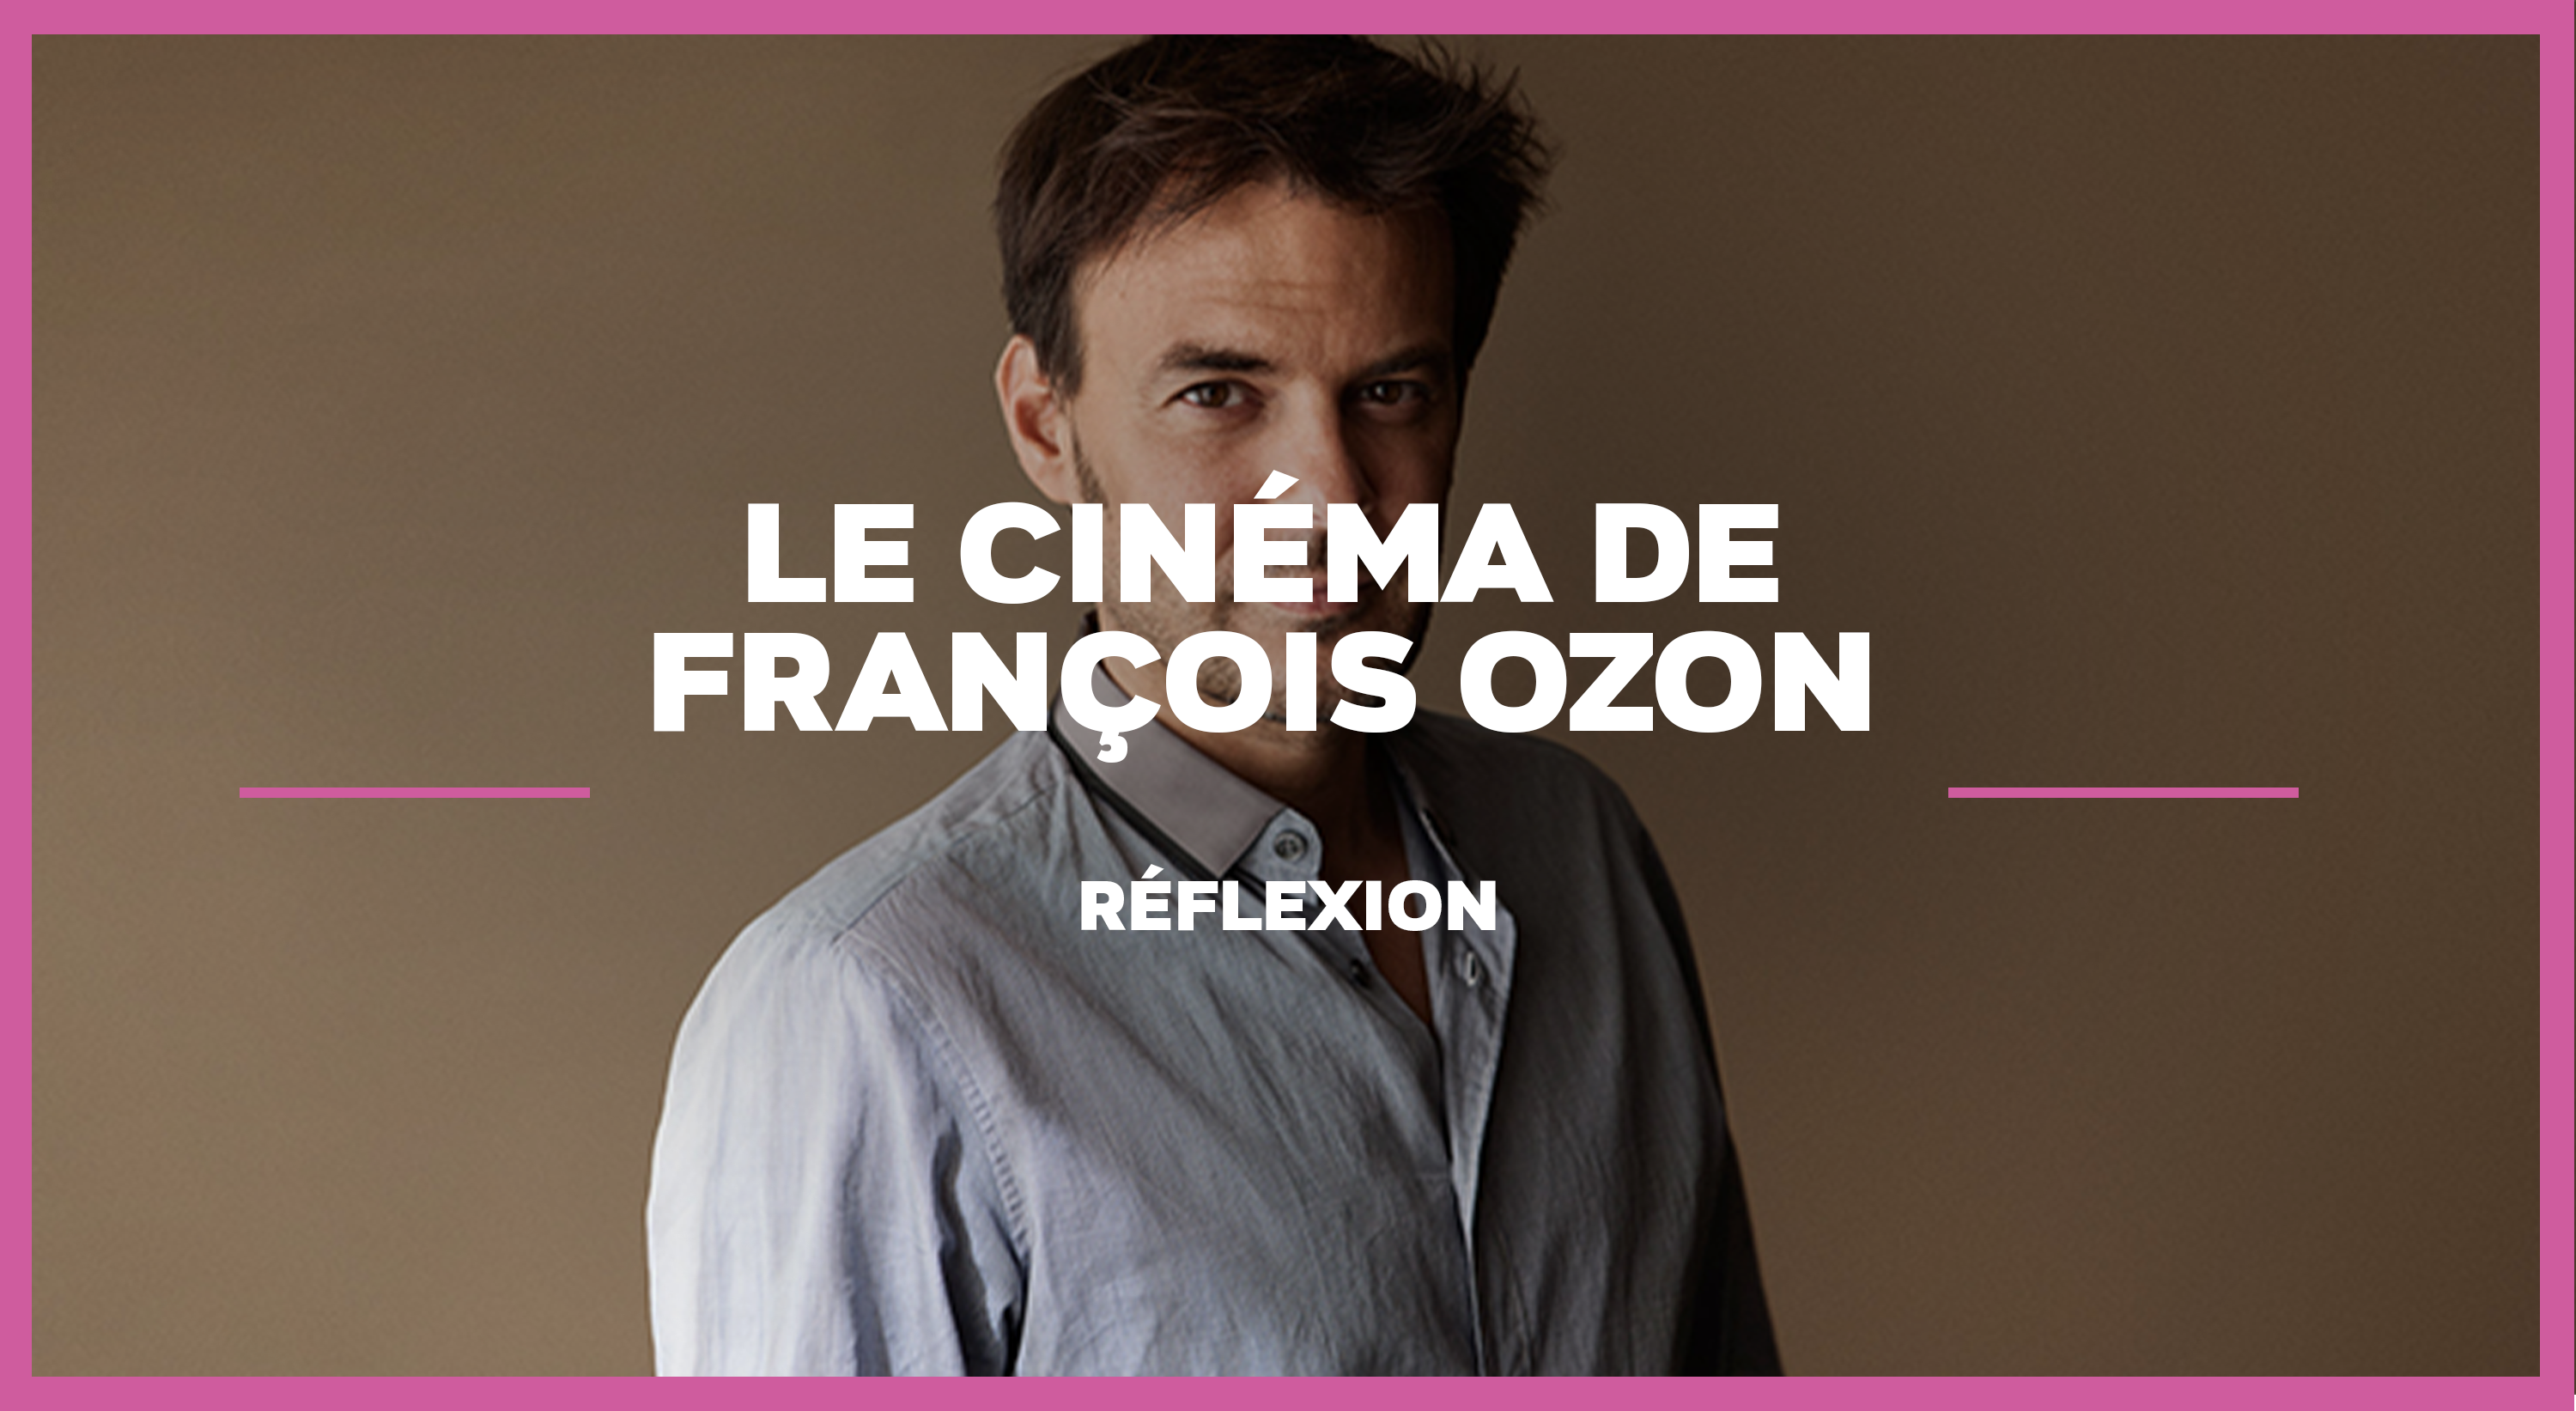 Le cinéma de François Ozon